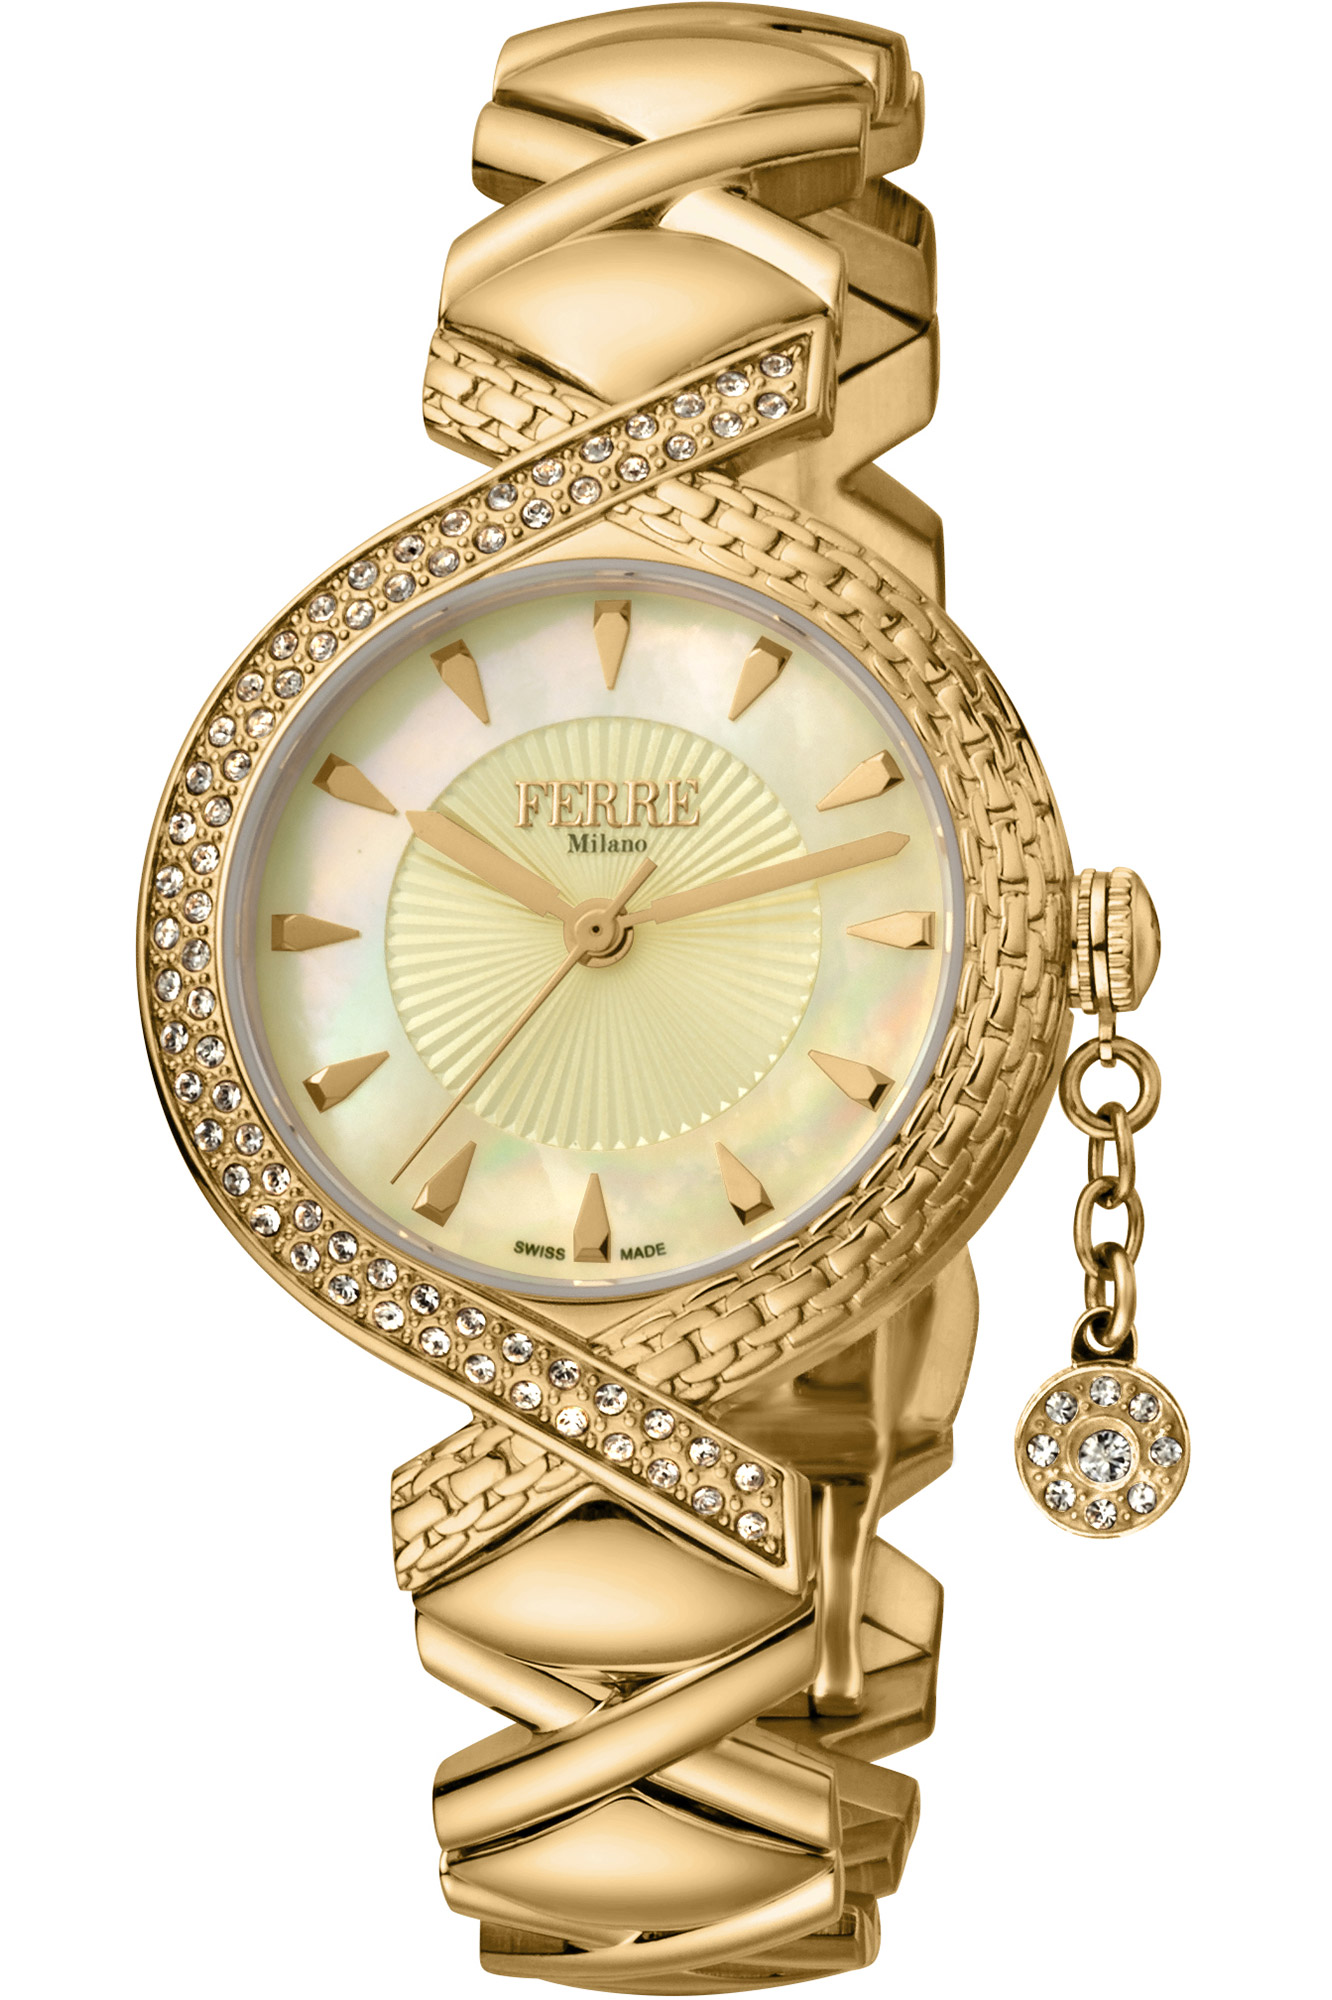 Reloj Ferrè Milano Lady fm1l122m0021